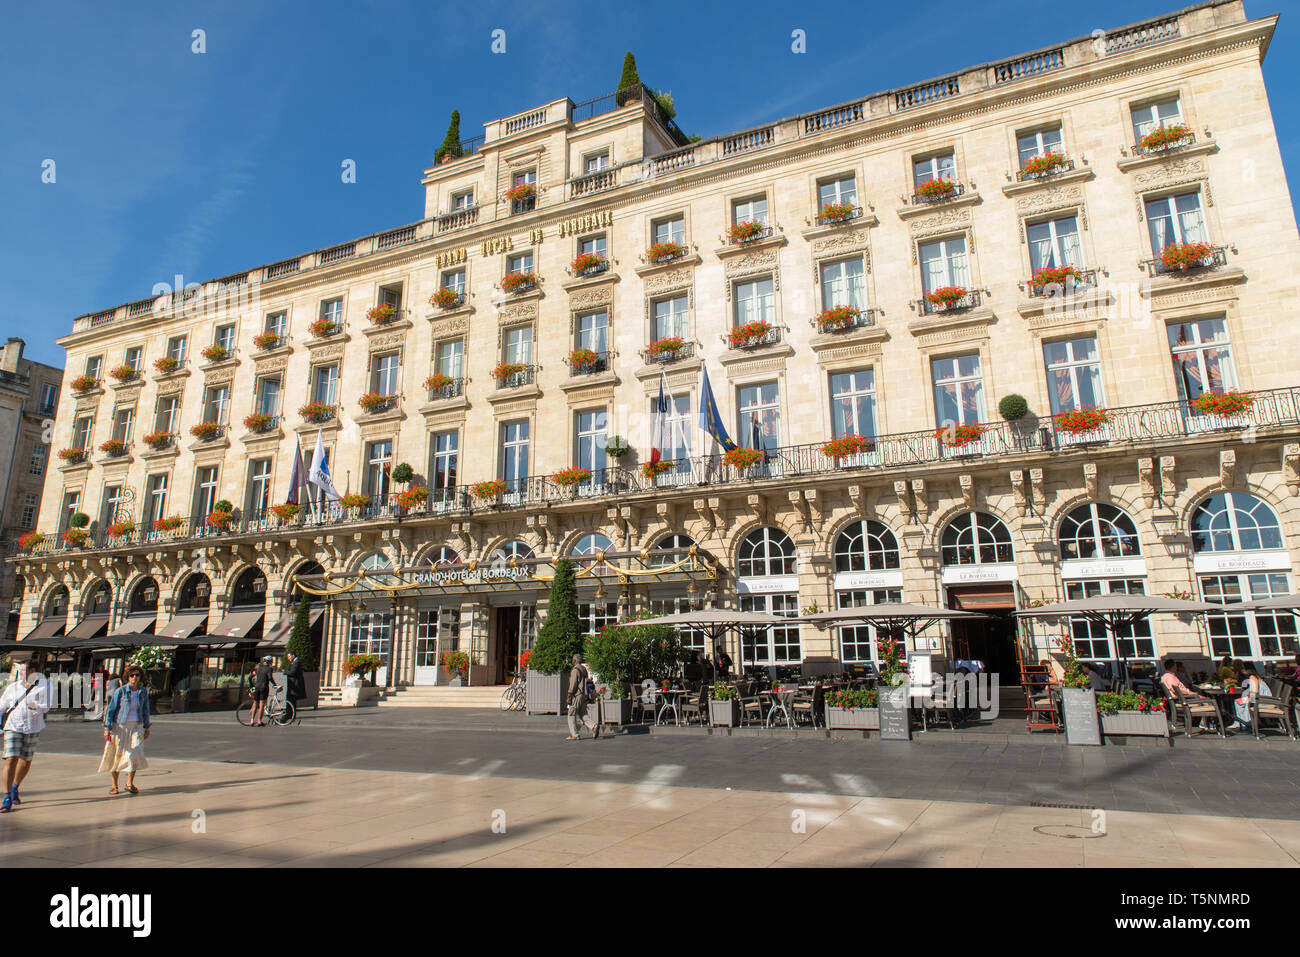 Grand Hotel de Bordeaux, Gironde, France. Stock Photo